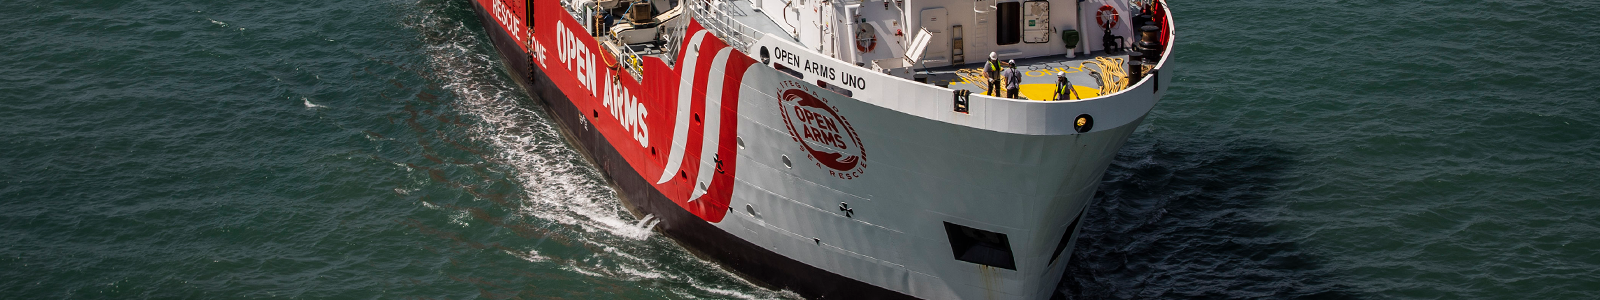 El nuevo buque insignia Open Arms Uno zarpa en su primera misión humanitaria